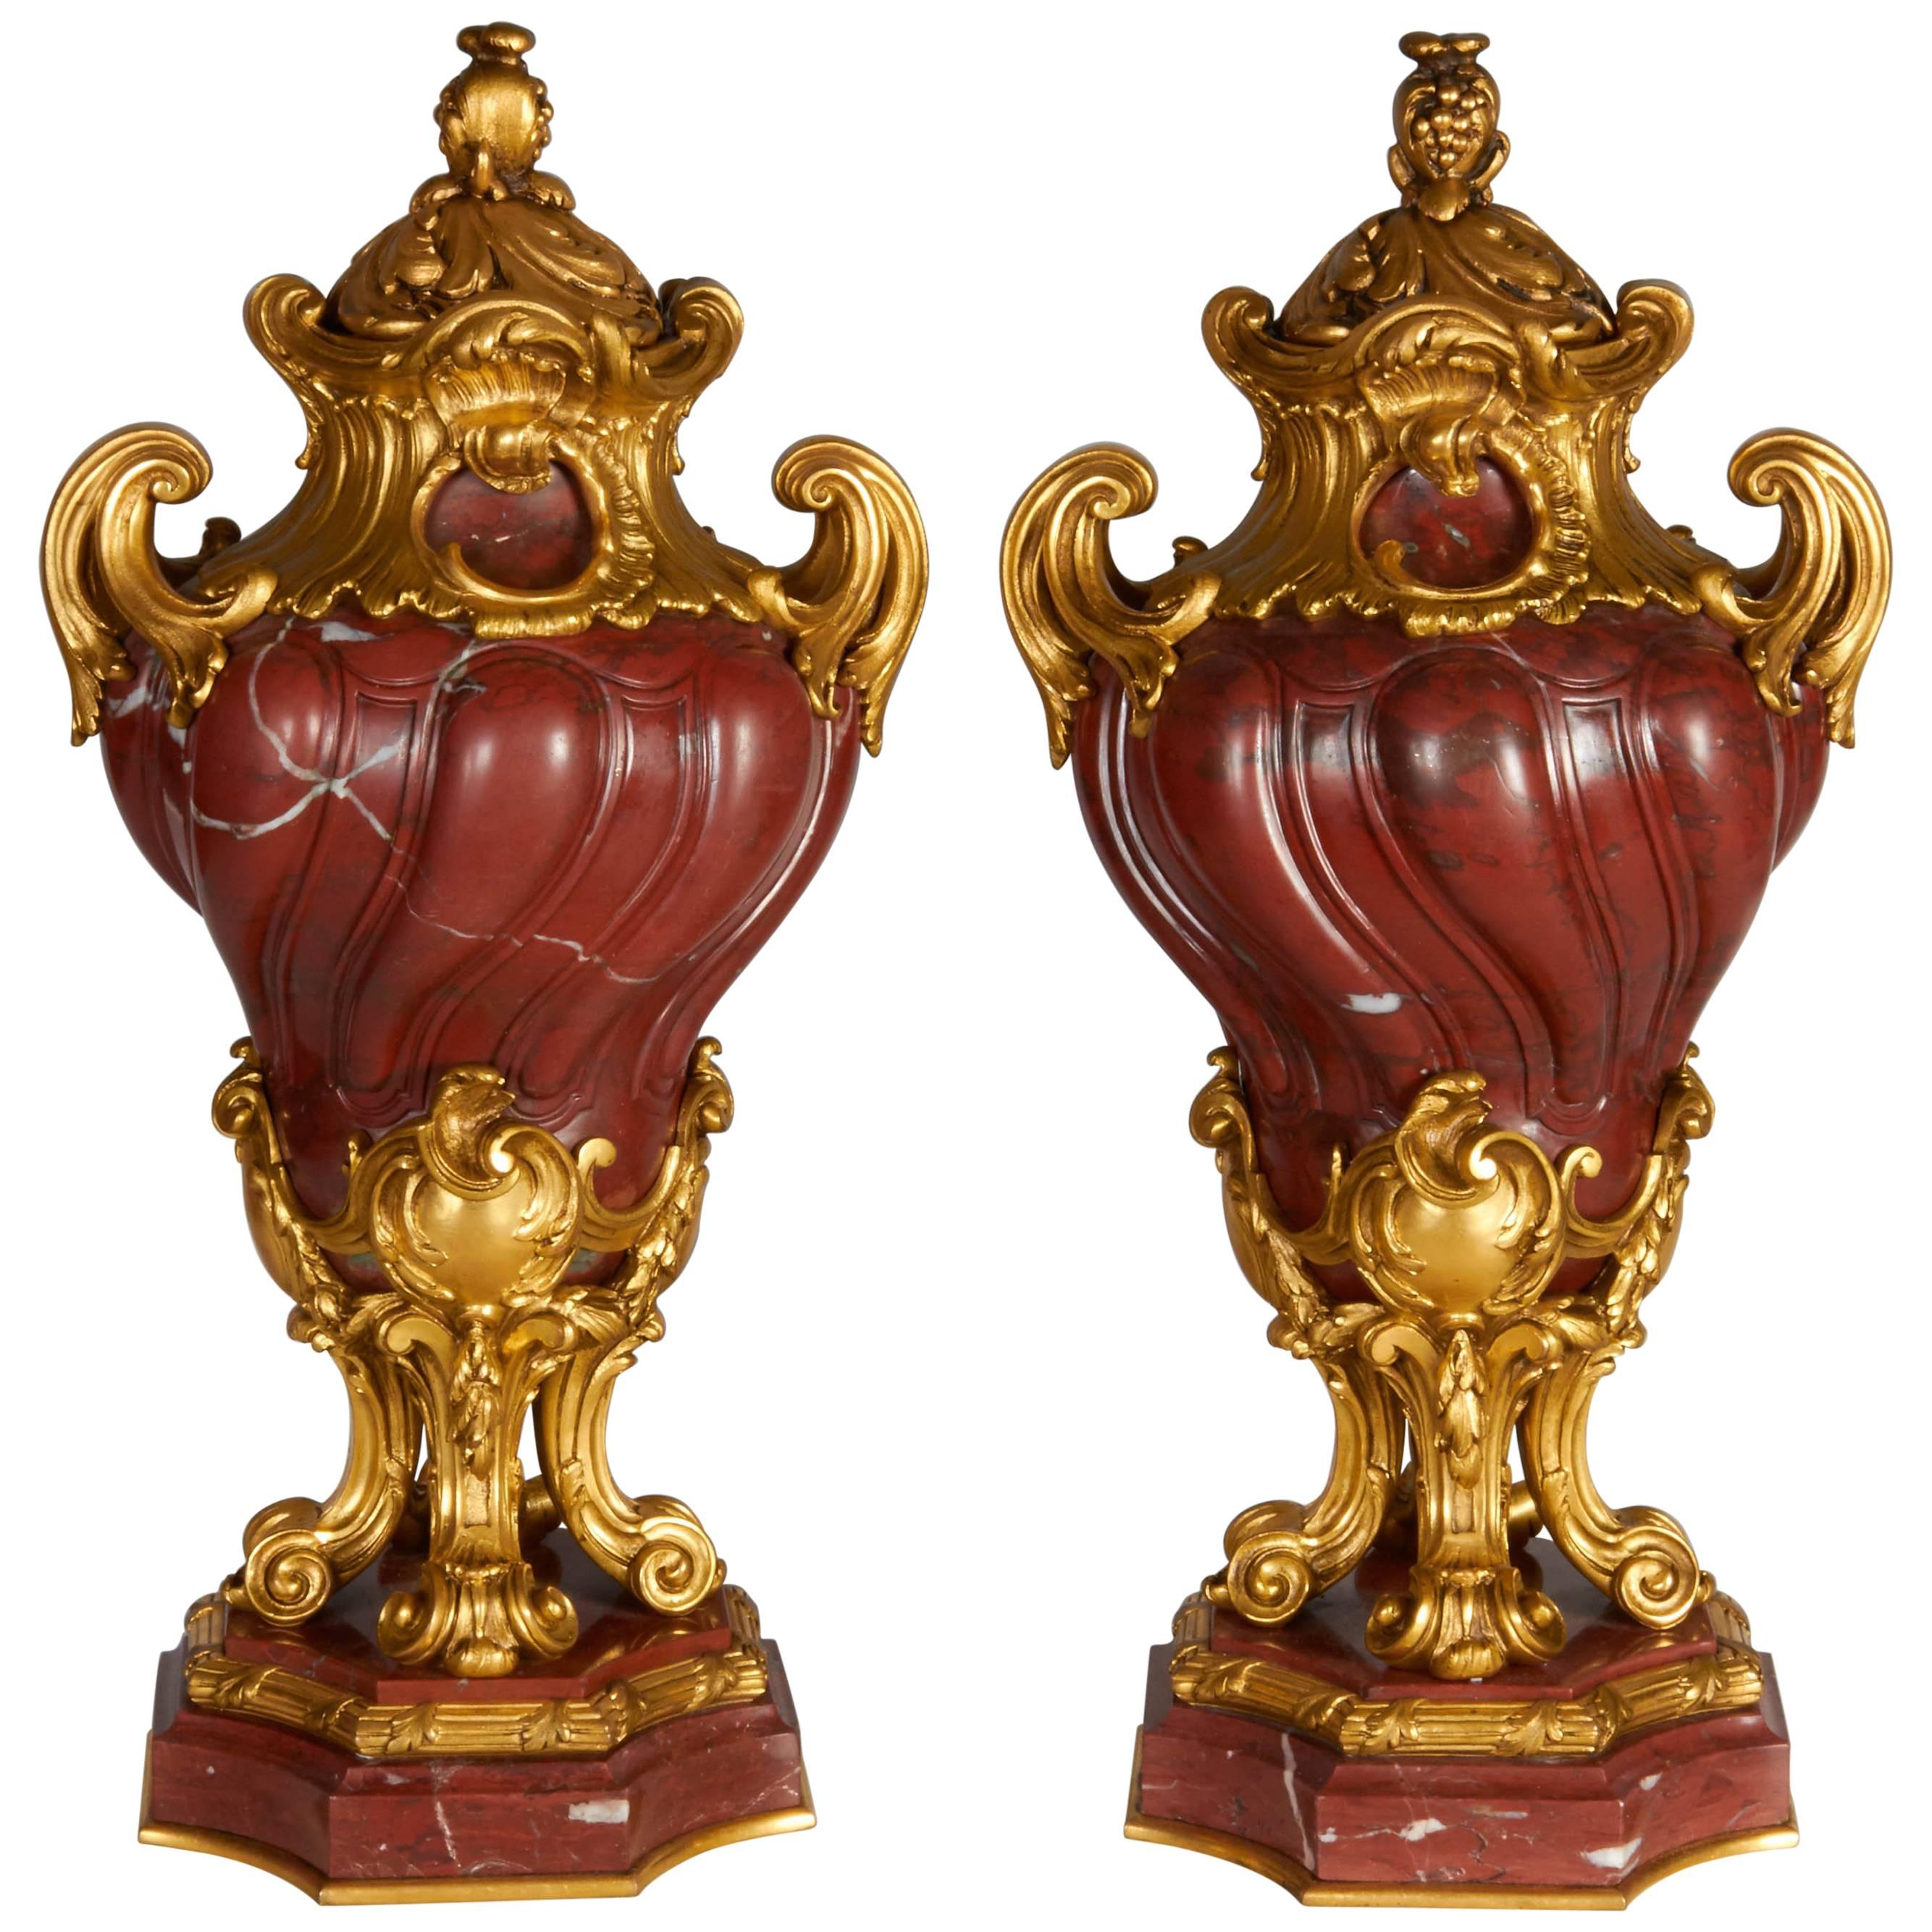 Paar antike französische Vasen aus Rouge Griotte-Marmor mit Goldbronzebeschlägen, Übergangszeitalter